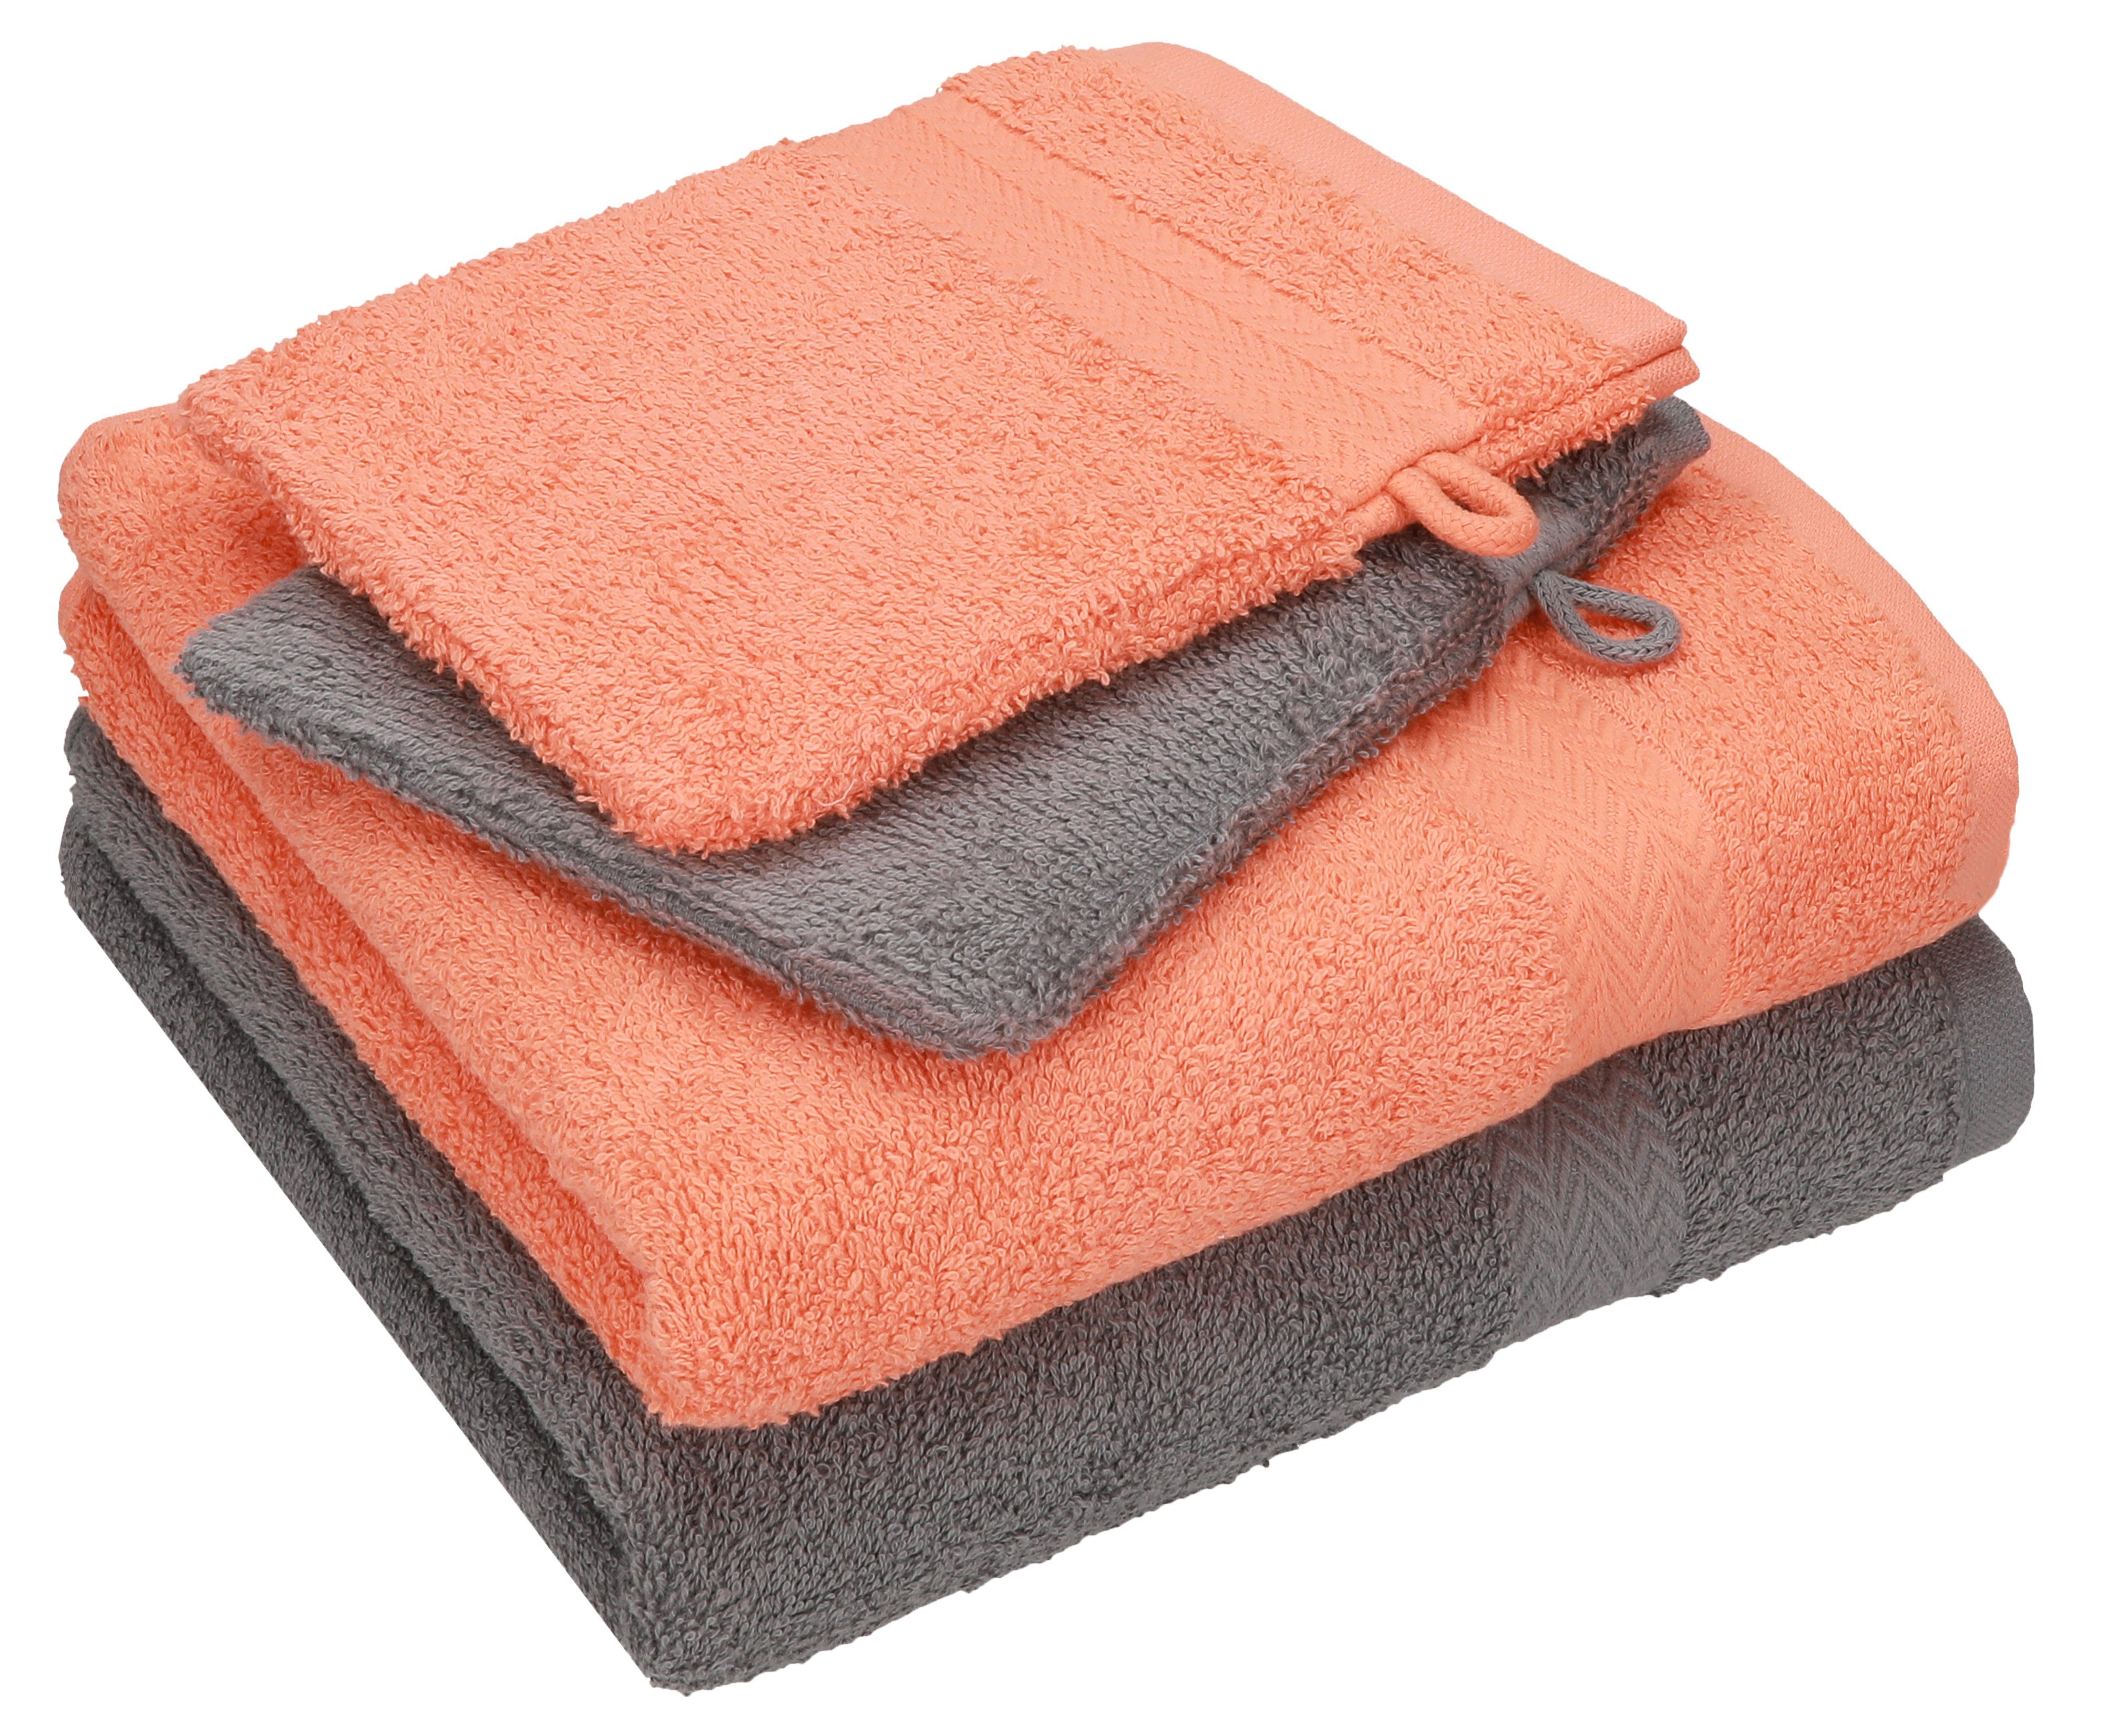 Betz Handtuch Set 4 TLG. Handtuch Set Happy Pack 100% Baumwolle 2 Handtücher 2 Waschhandschuhe, 100% Baumwolle anthrazit grau - orange